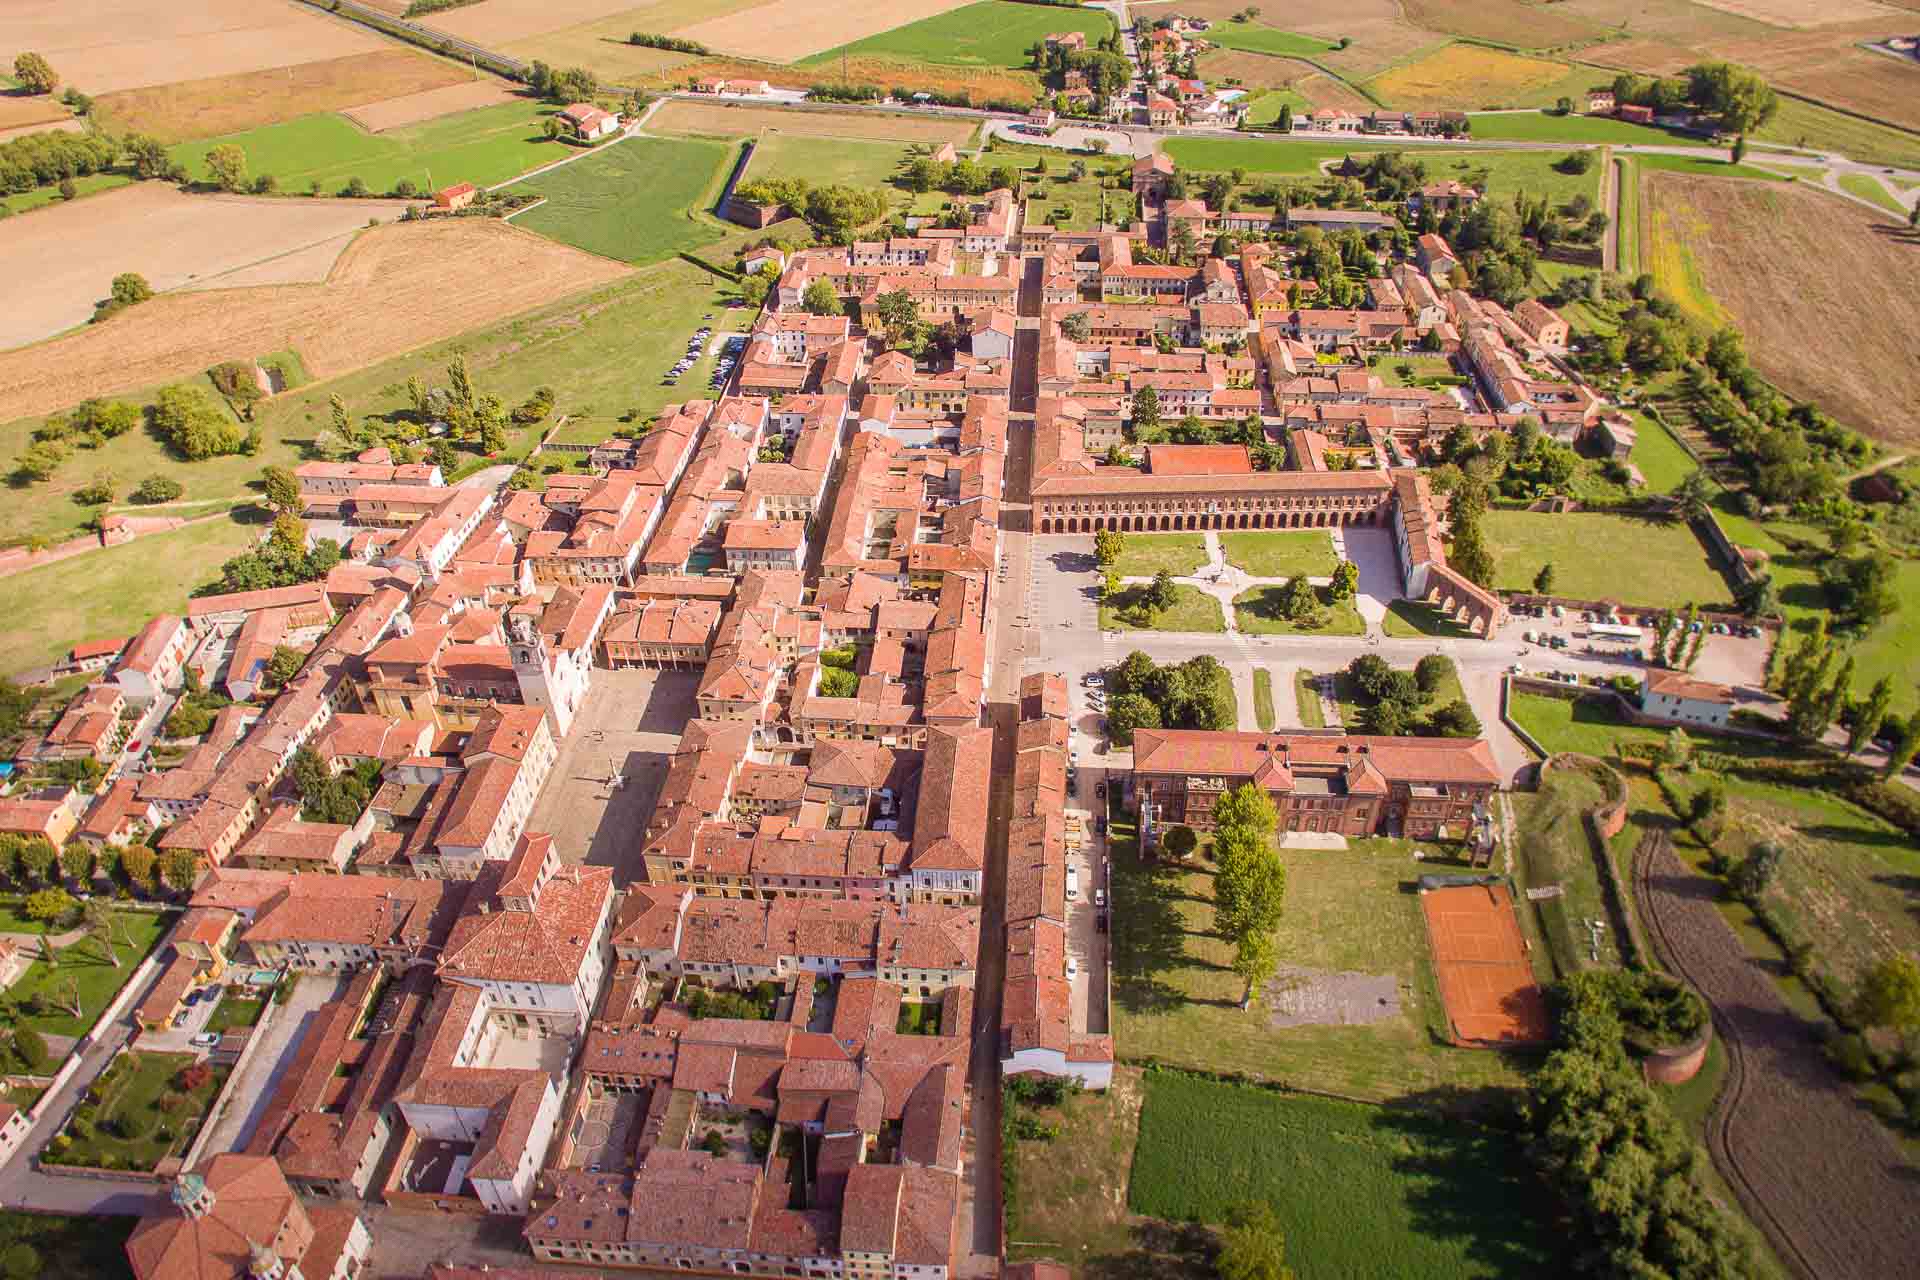 Vista aerea de Sabbioneta uma vila de Mantova na Itália